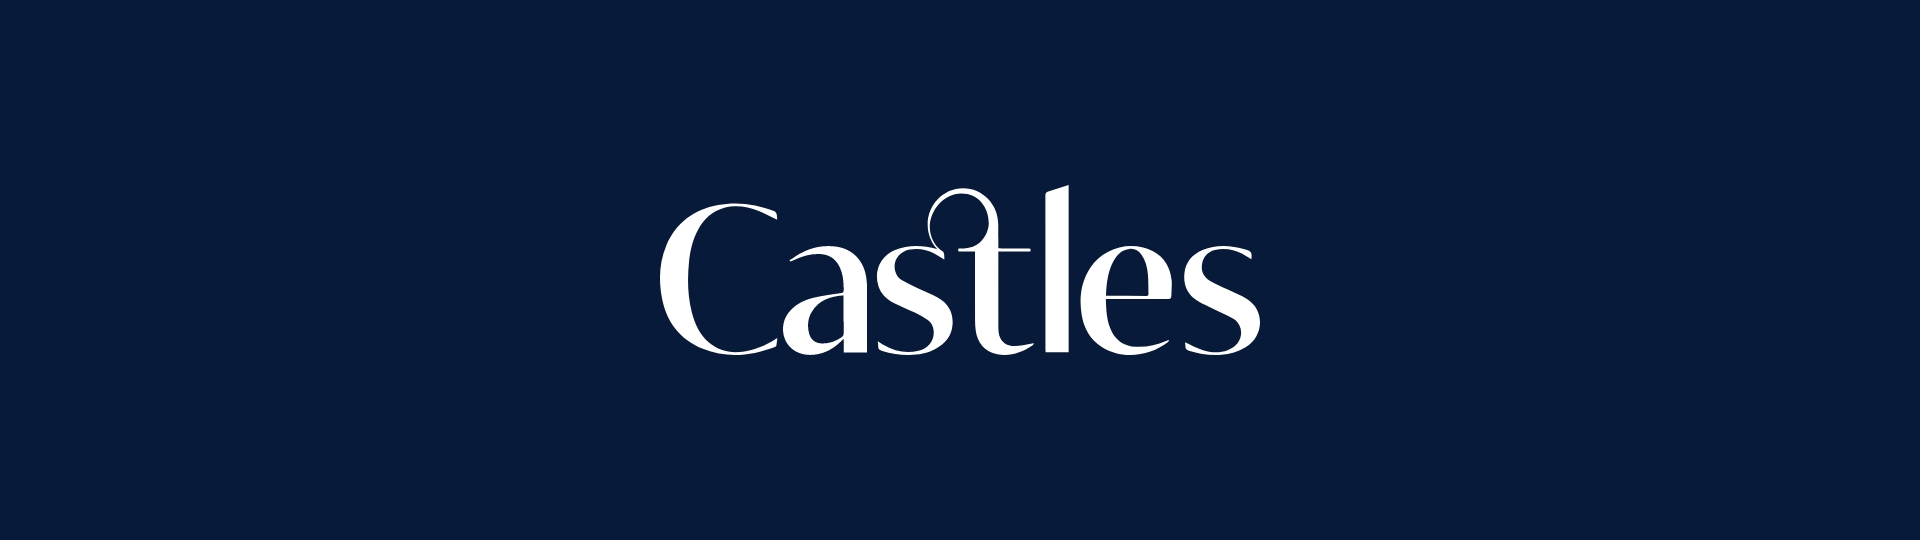 Castles-Logo-White-on-Blue